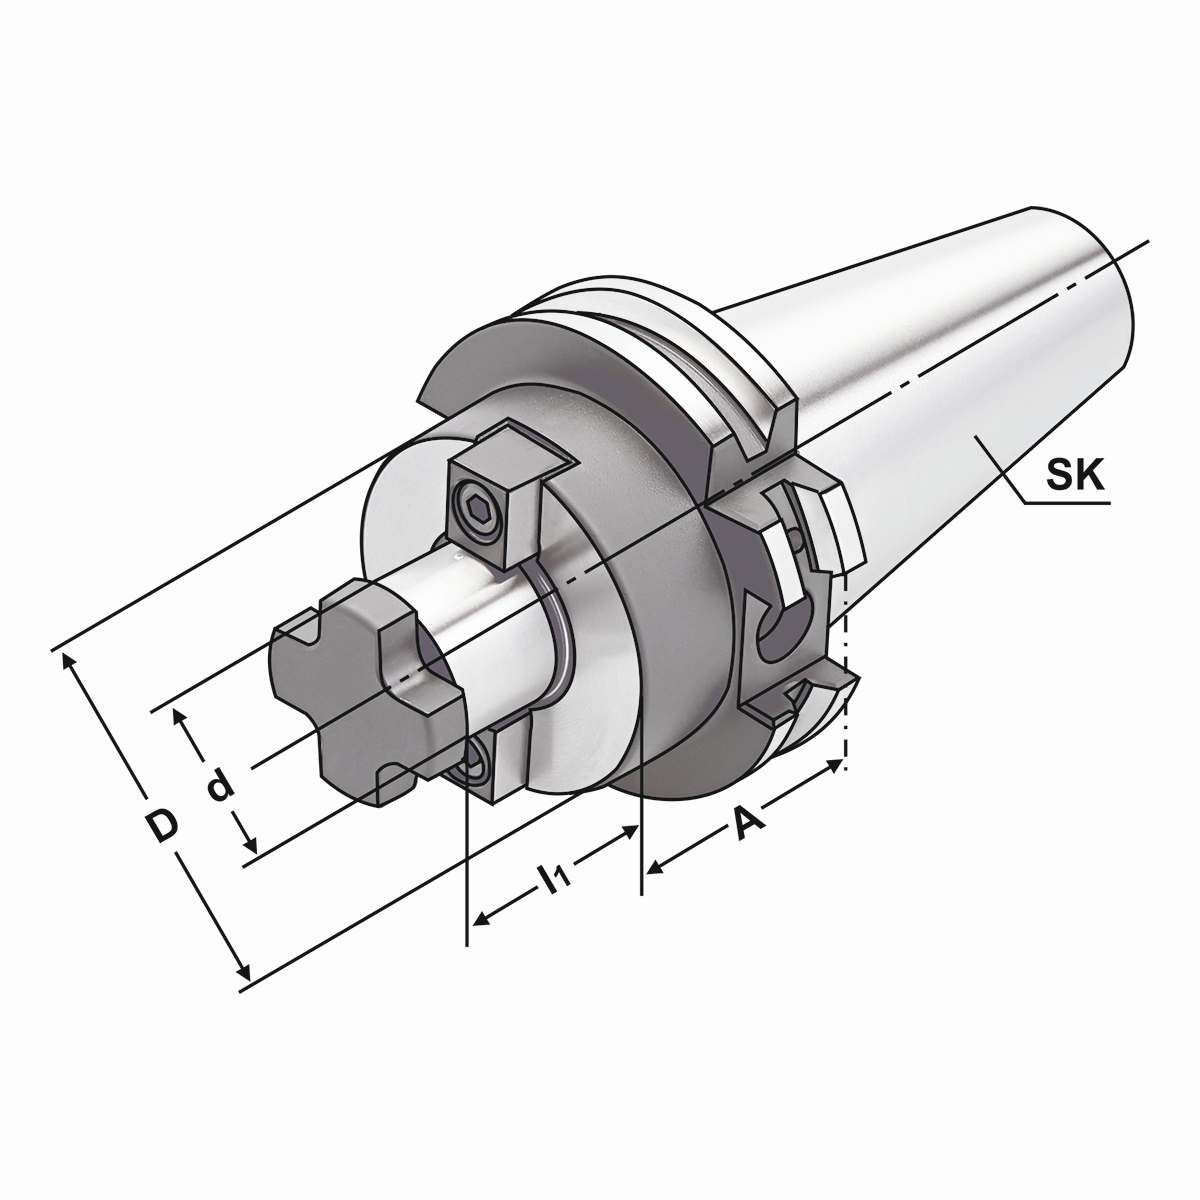 Quernut-Aufsteckdorn SK 30-32-50 mit vergrößertem Bunddurchmesser